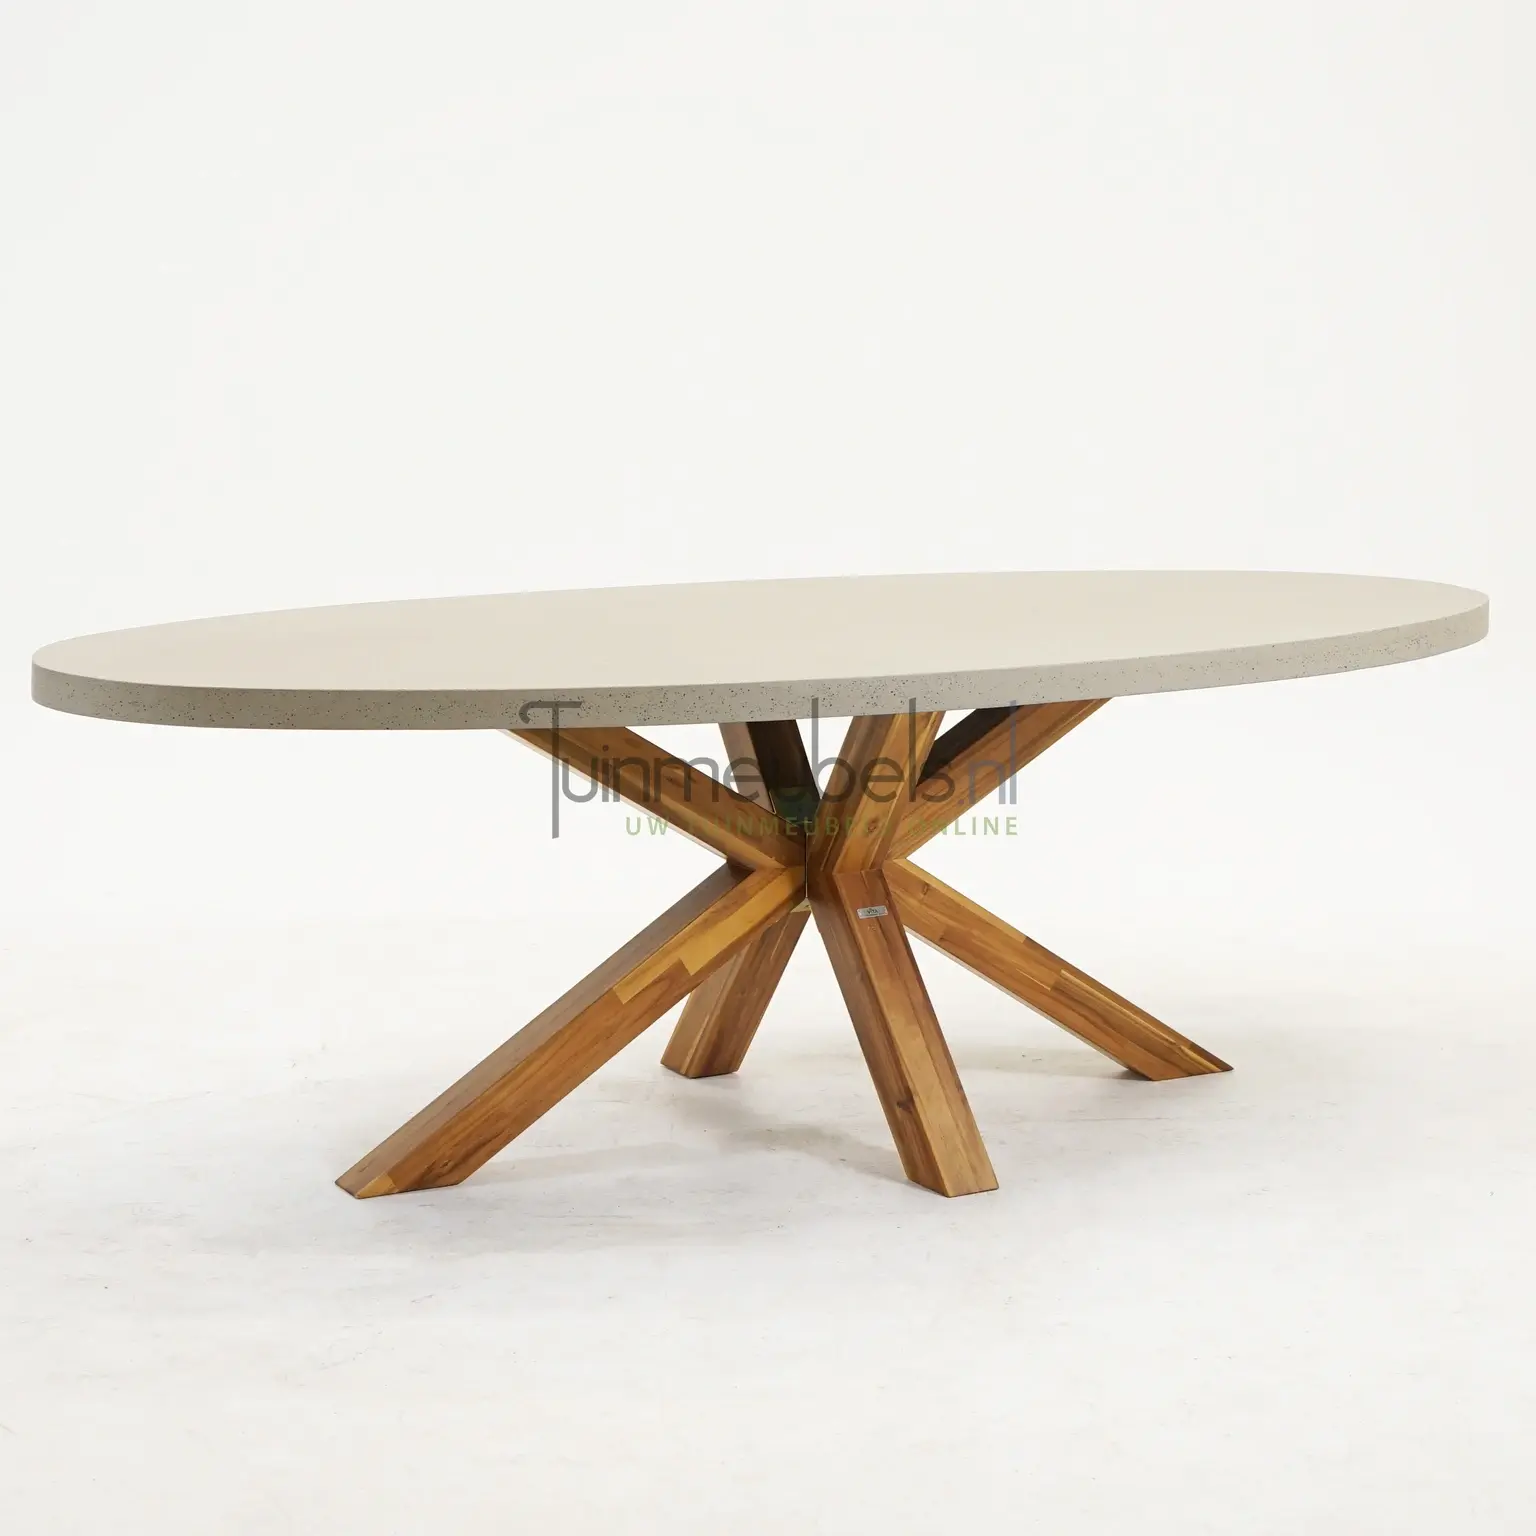 Brumby ovale tafel 240 x 115cm met houten onderstel Top Merken Winkel